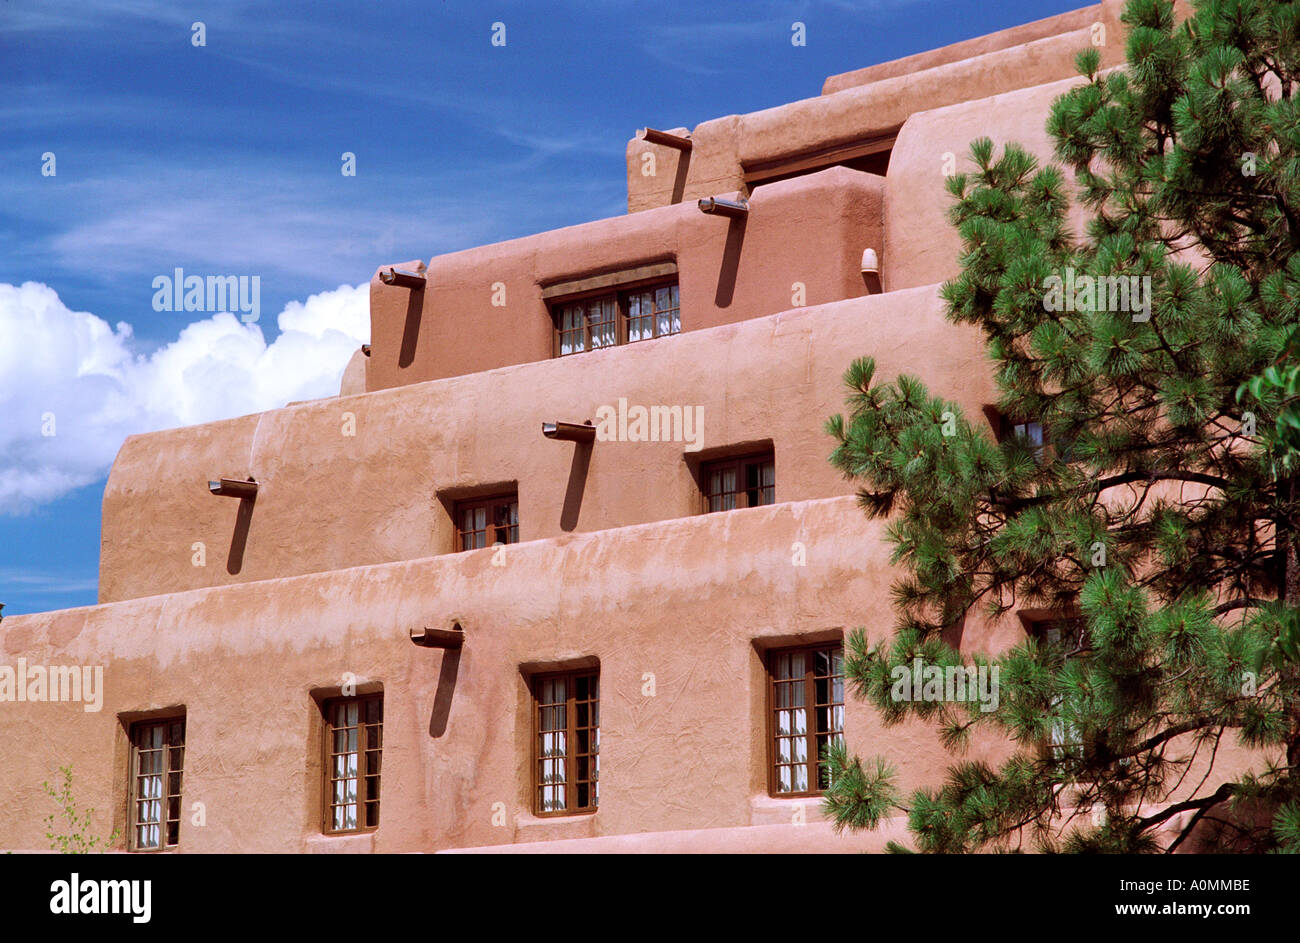 Adobe Building in Santa Fe New Mexico Stock Photo